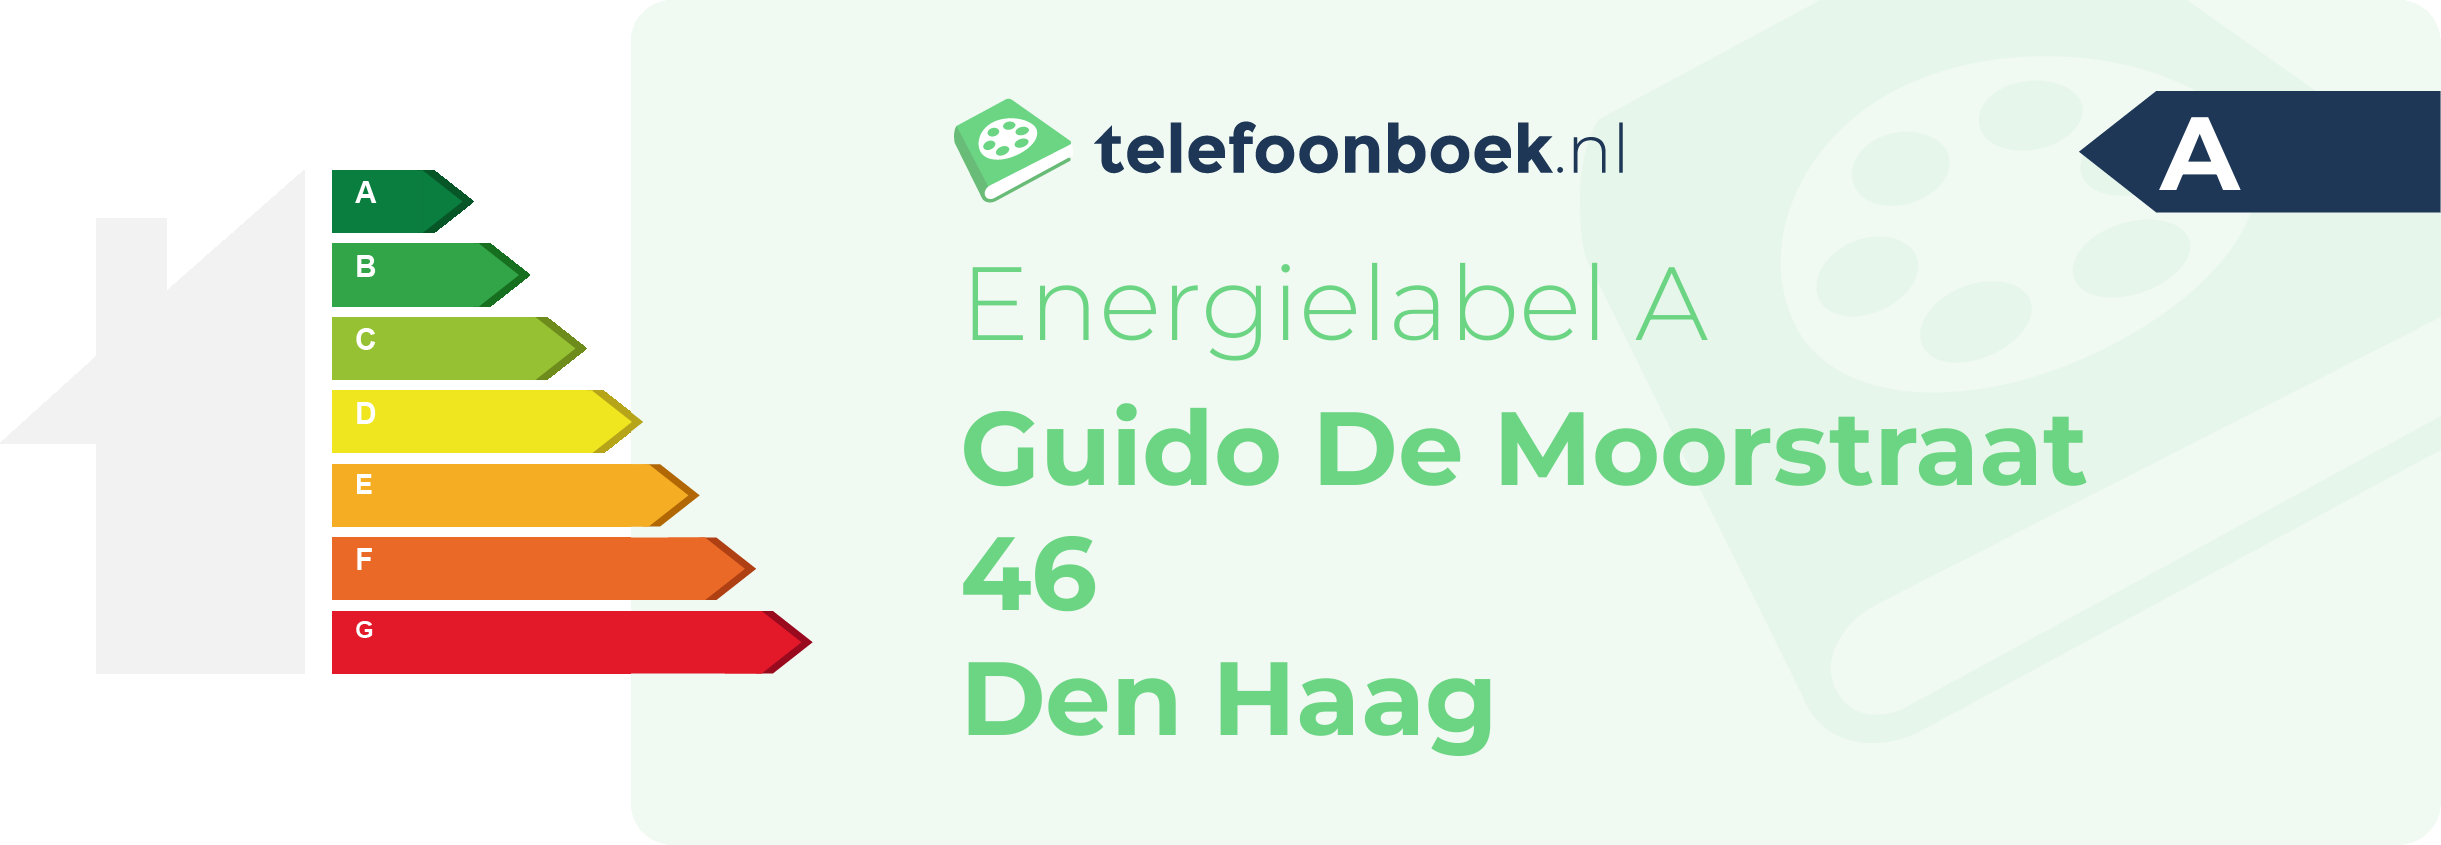 Energielabel Guido De Moorstraat 46 Den Haag